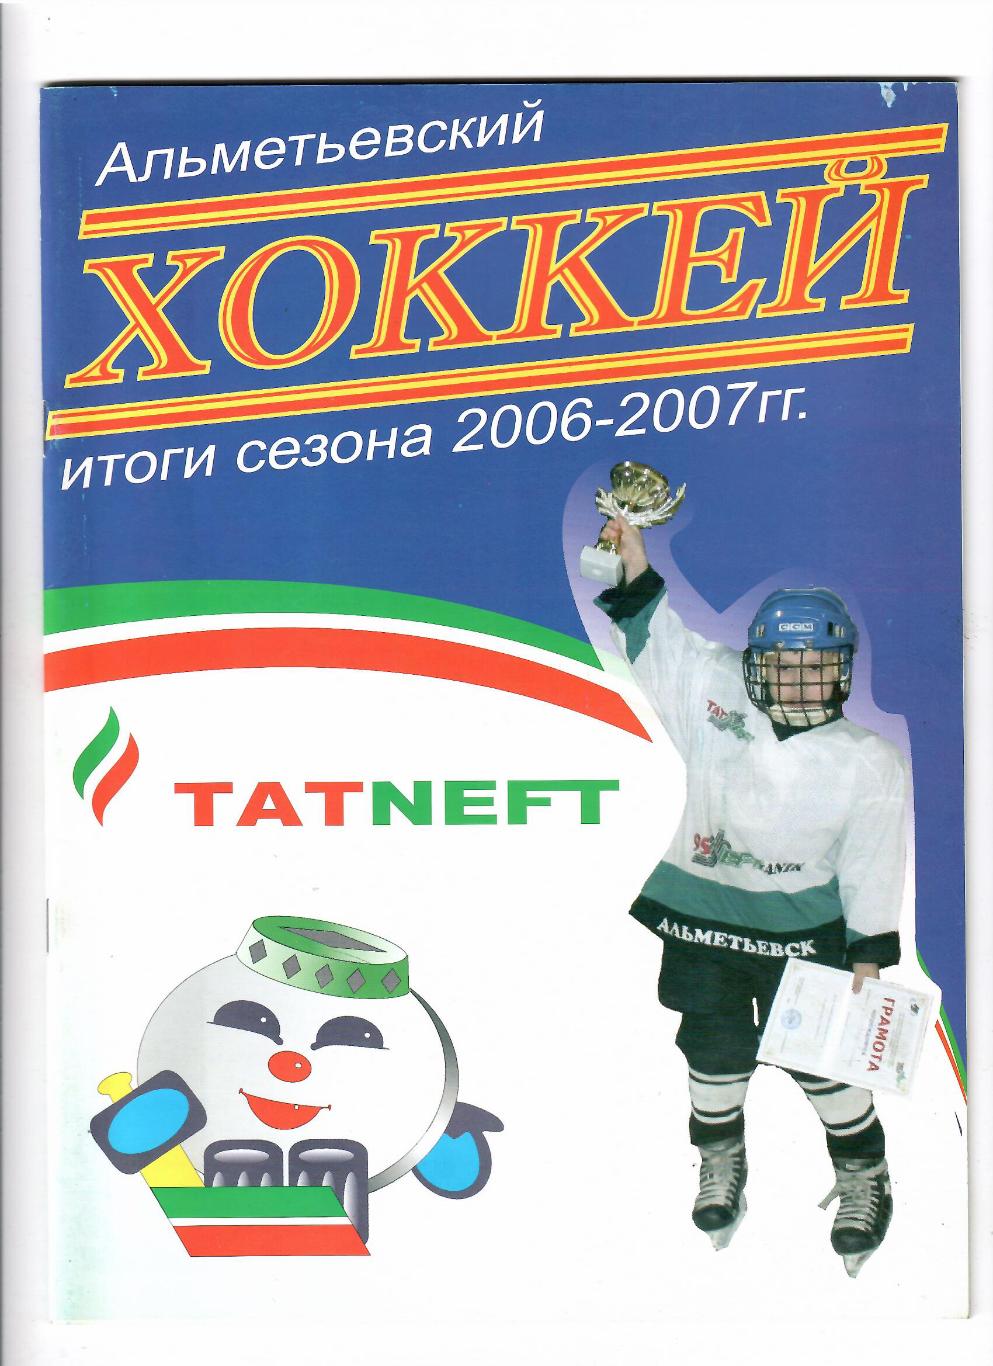 Альметьевский хоккей 2006-2007